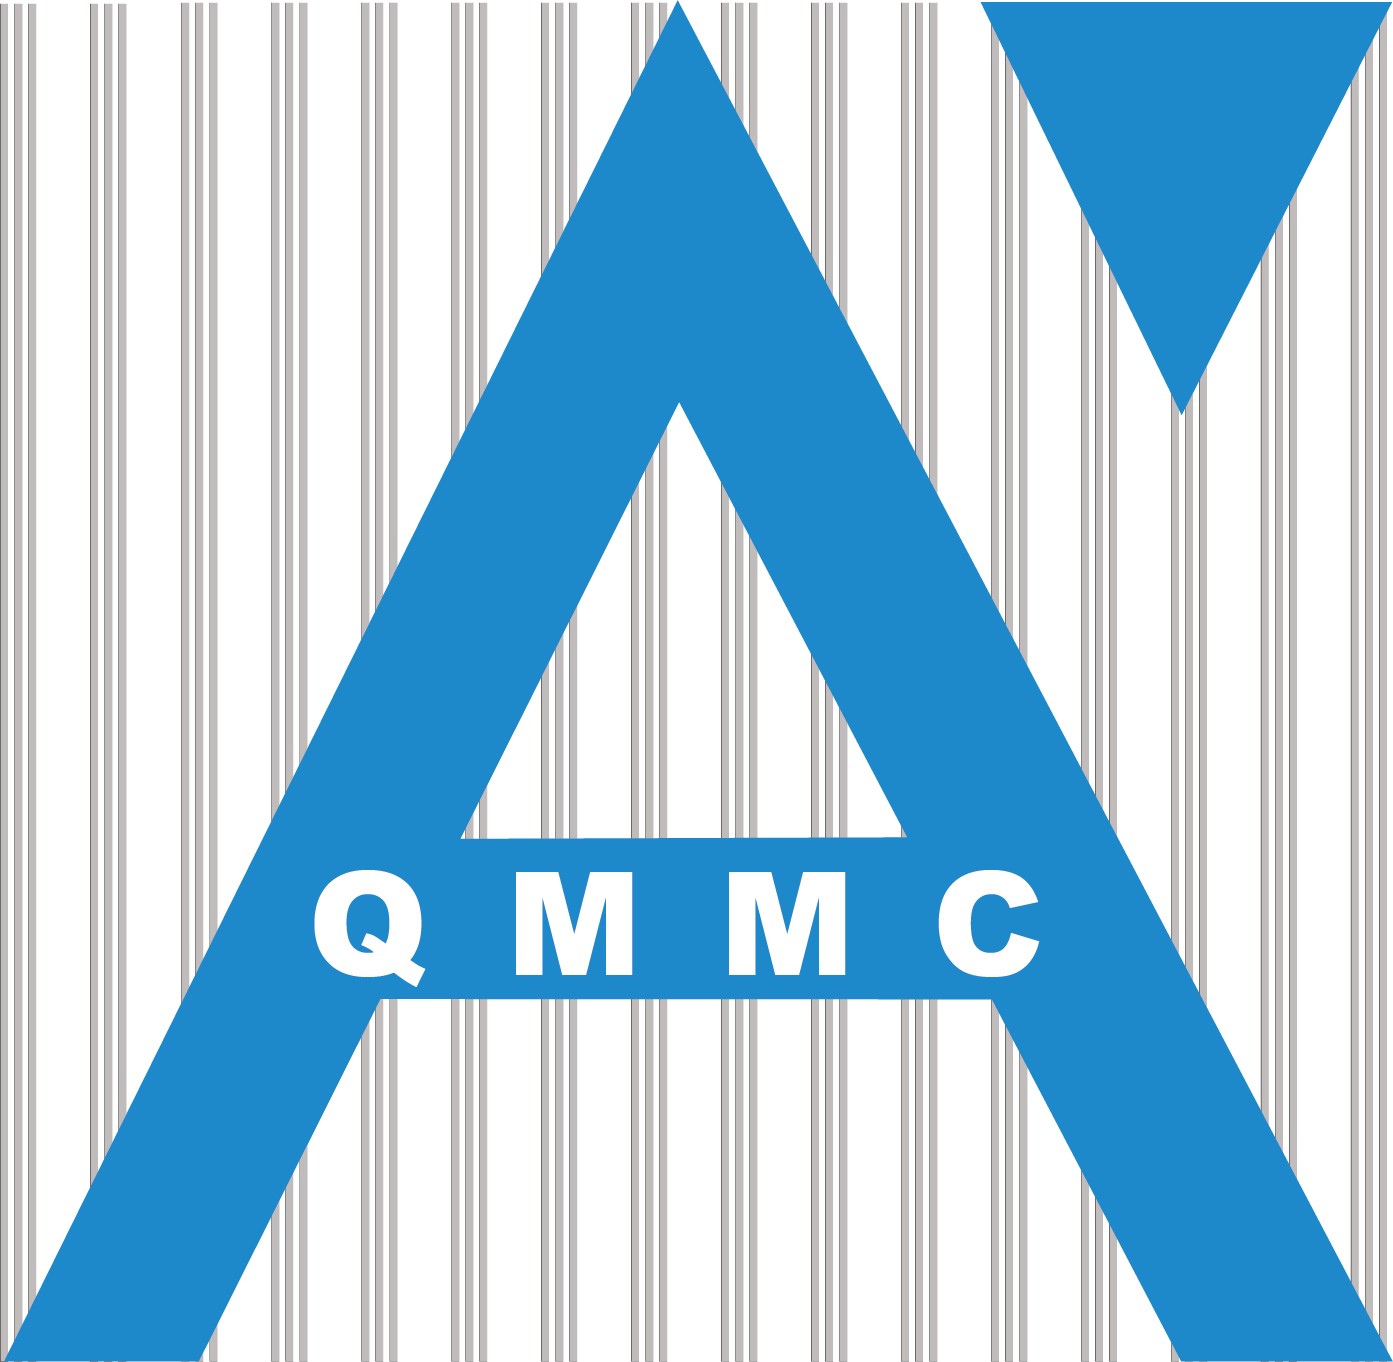 QMMC